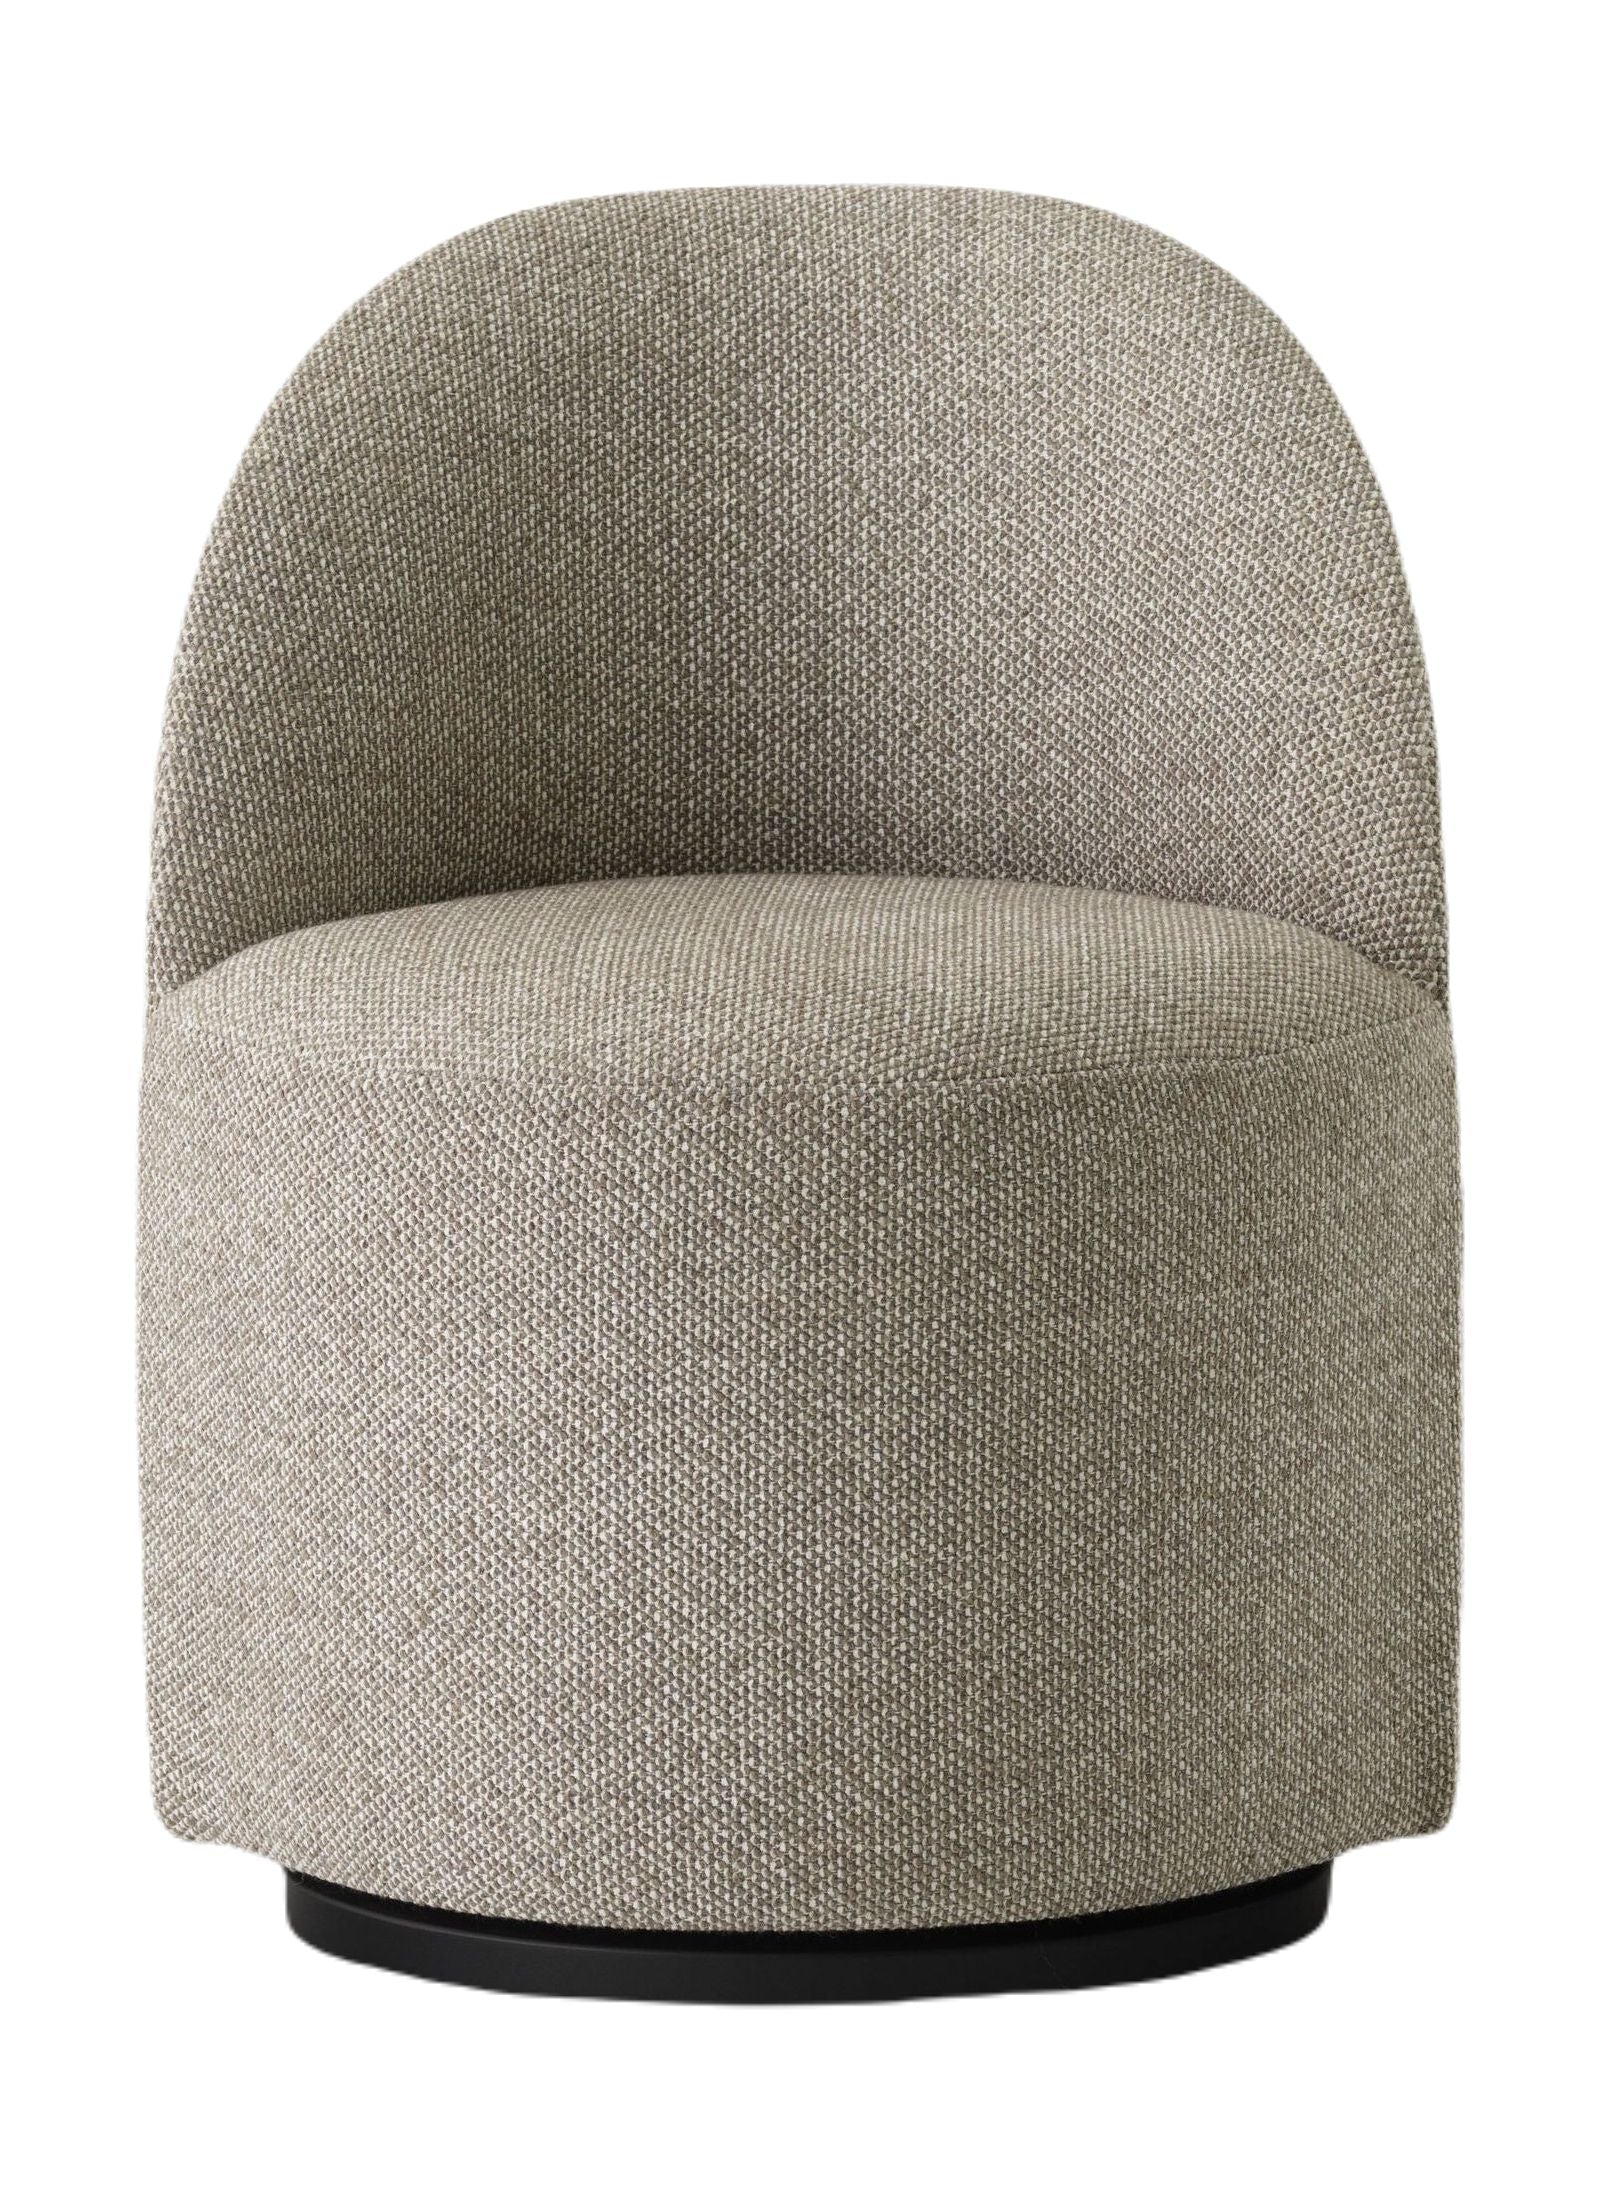 Menu Tearoom Side Chair Polstret Drejestel med Retur, Safire 004-Stole-Menu-5709262135417-9609203-000500ZZ-MEN-Allbuy